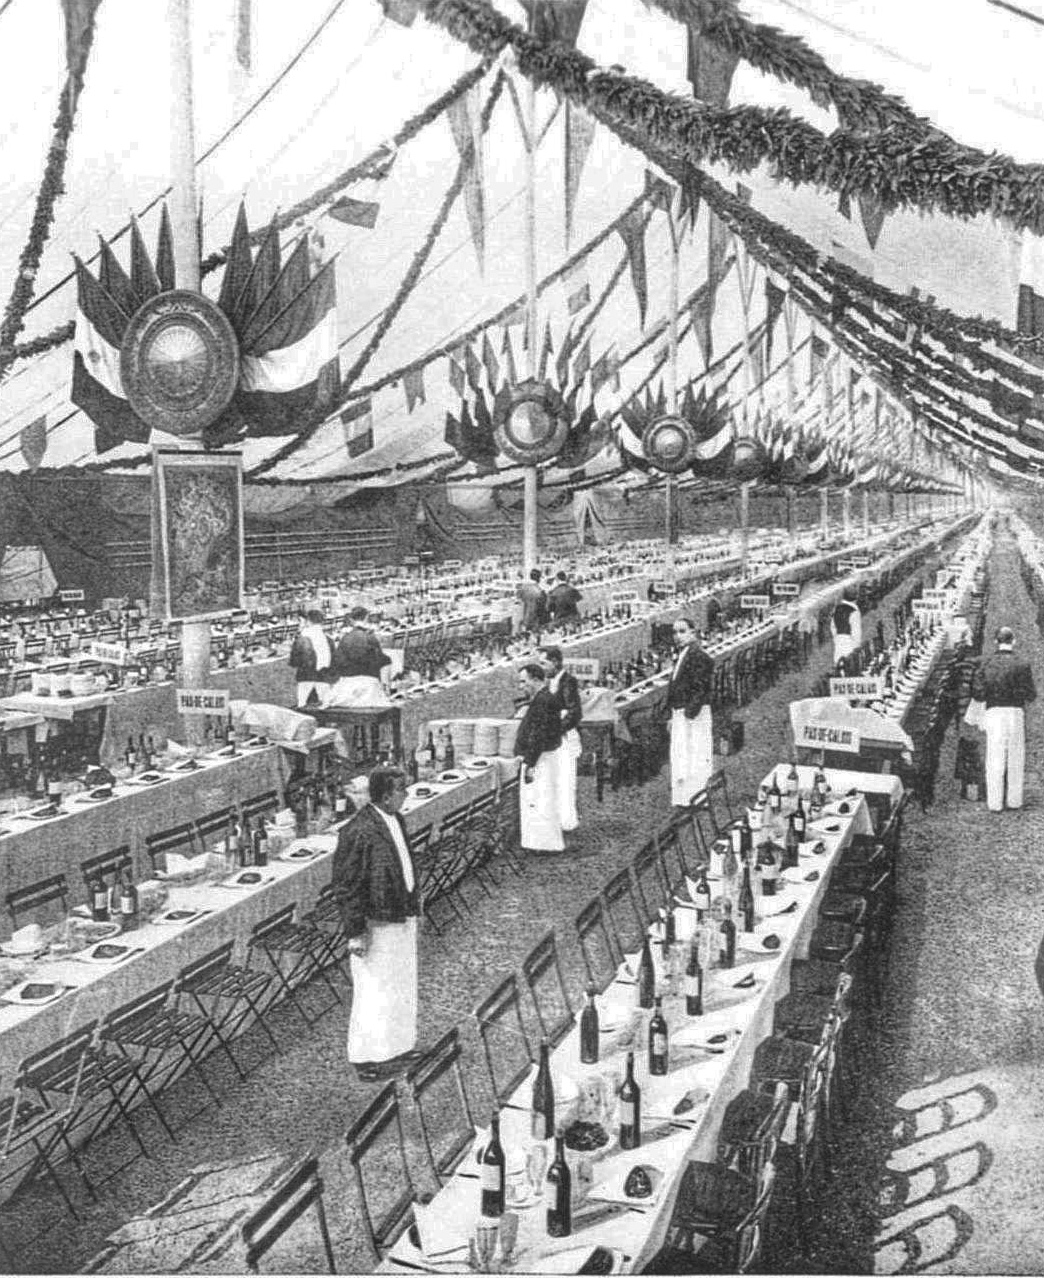 La tente du banquet des maires pendant l'exposition universelle de paris en 1900